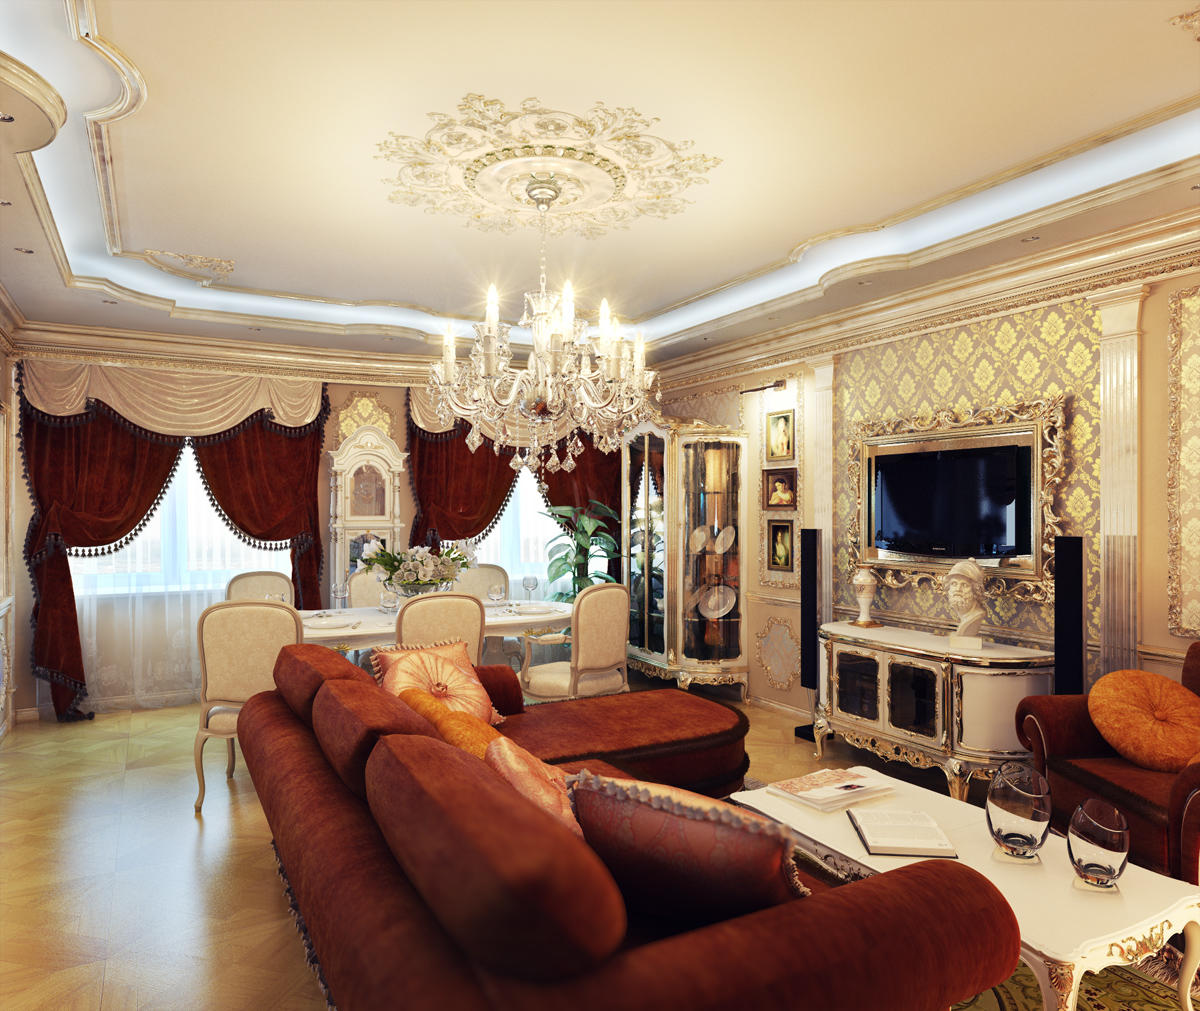 Klassiseen tyyliin sisustetut olohuoneet on valmistettu valkoisesta tai beigestä, ja ne täydentävät sisustusta kirkkailla väreillä